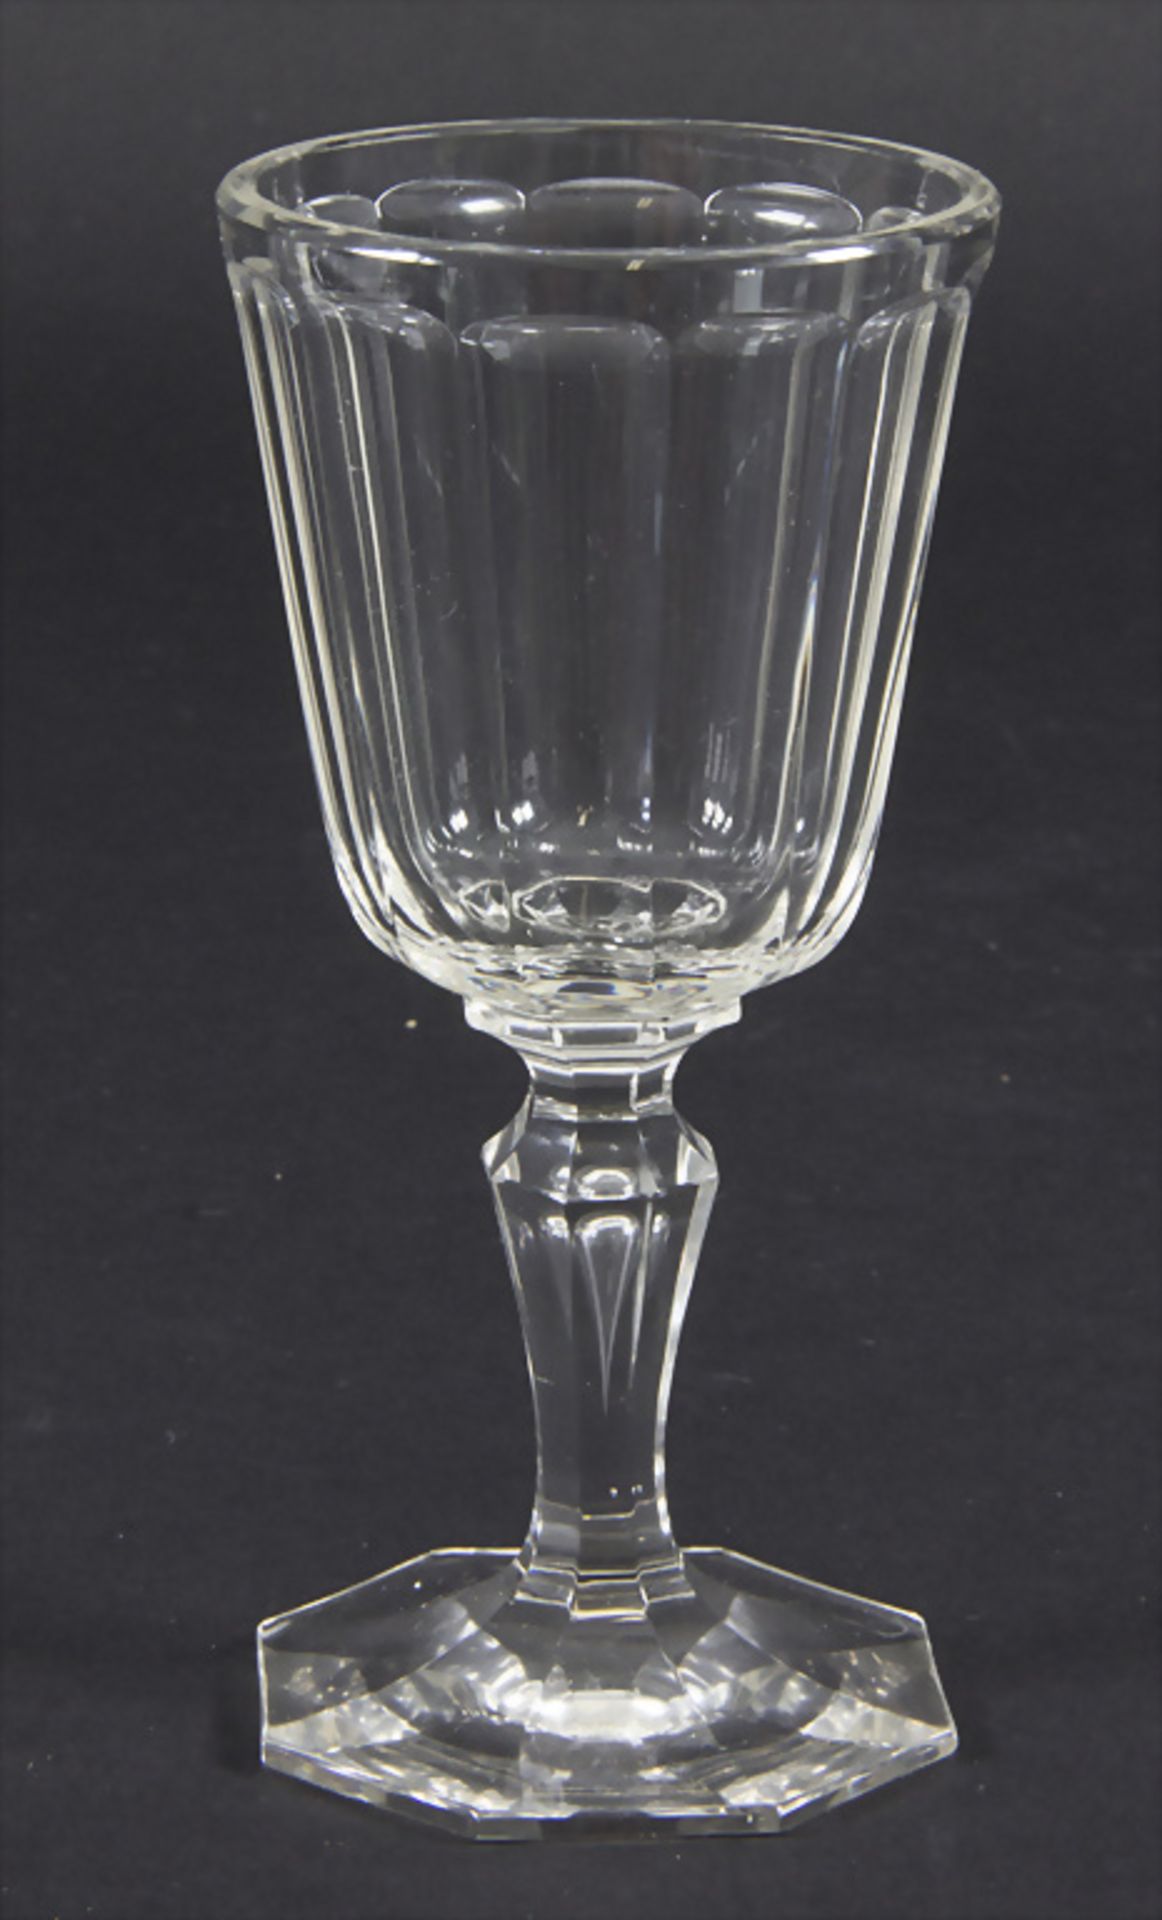 Weißweinglas / A white wine glass, J. & L. Lobmeyr, Wien, um 1900